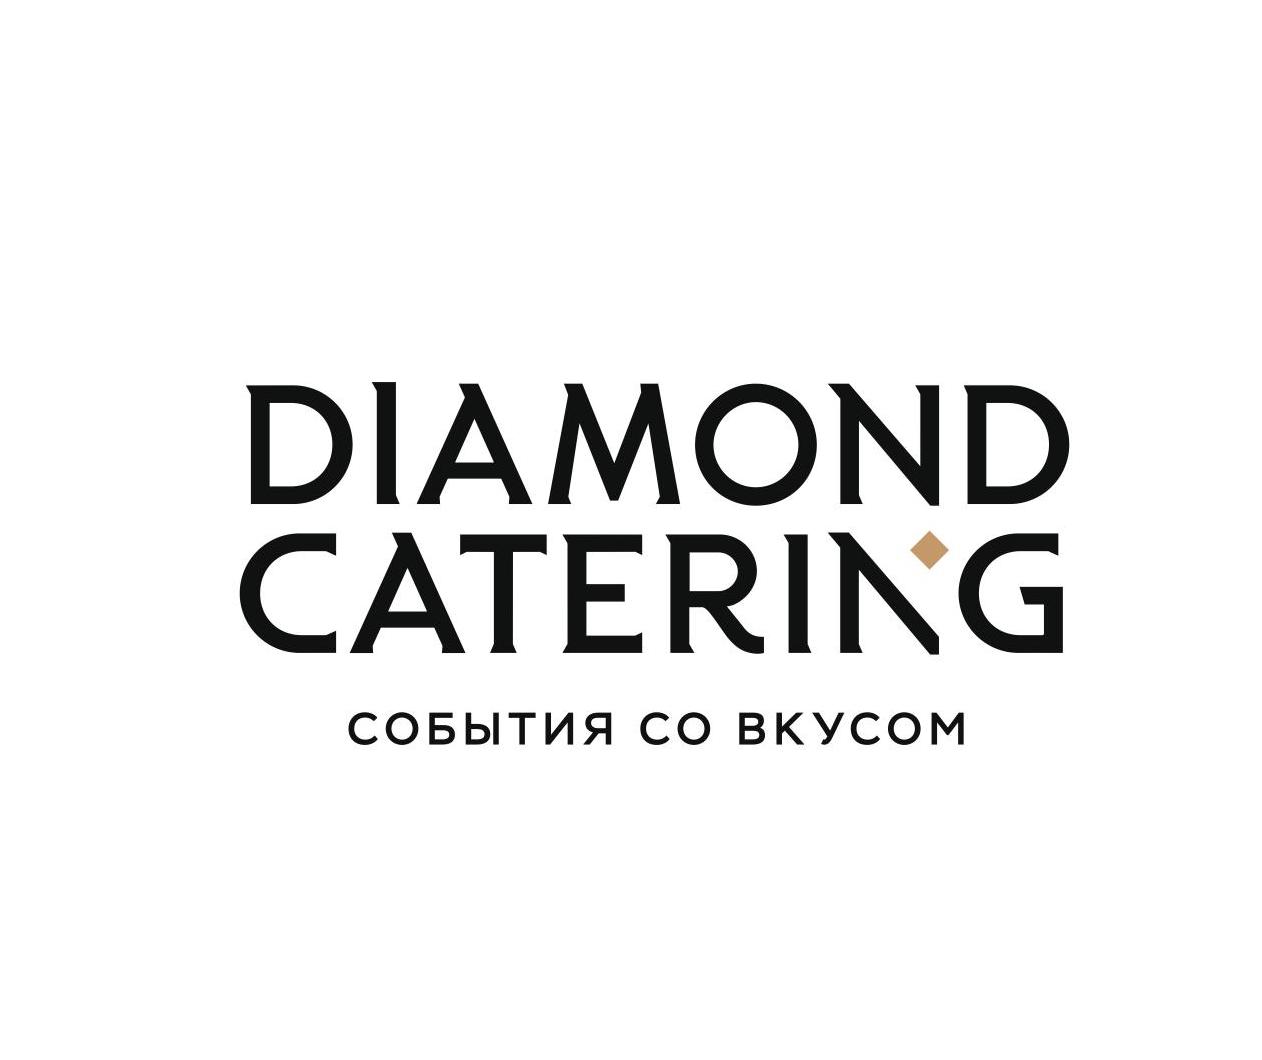 Diamond Catering